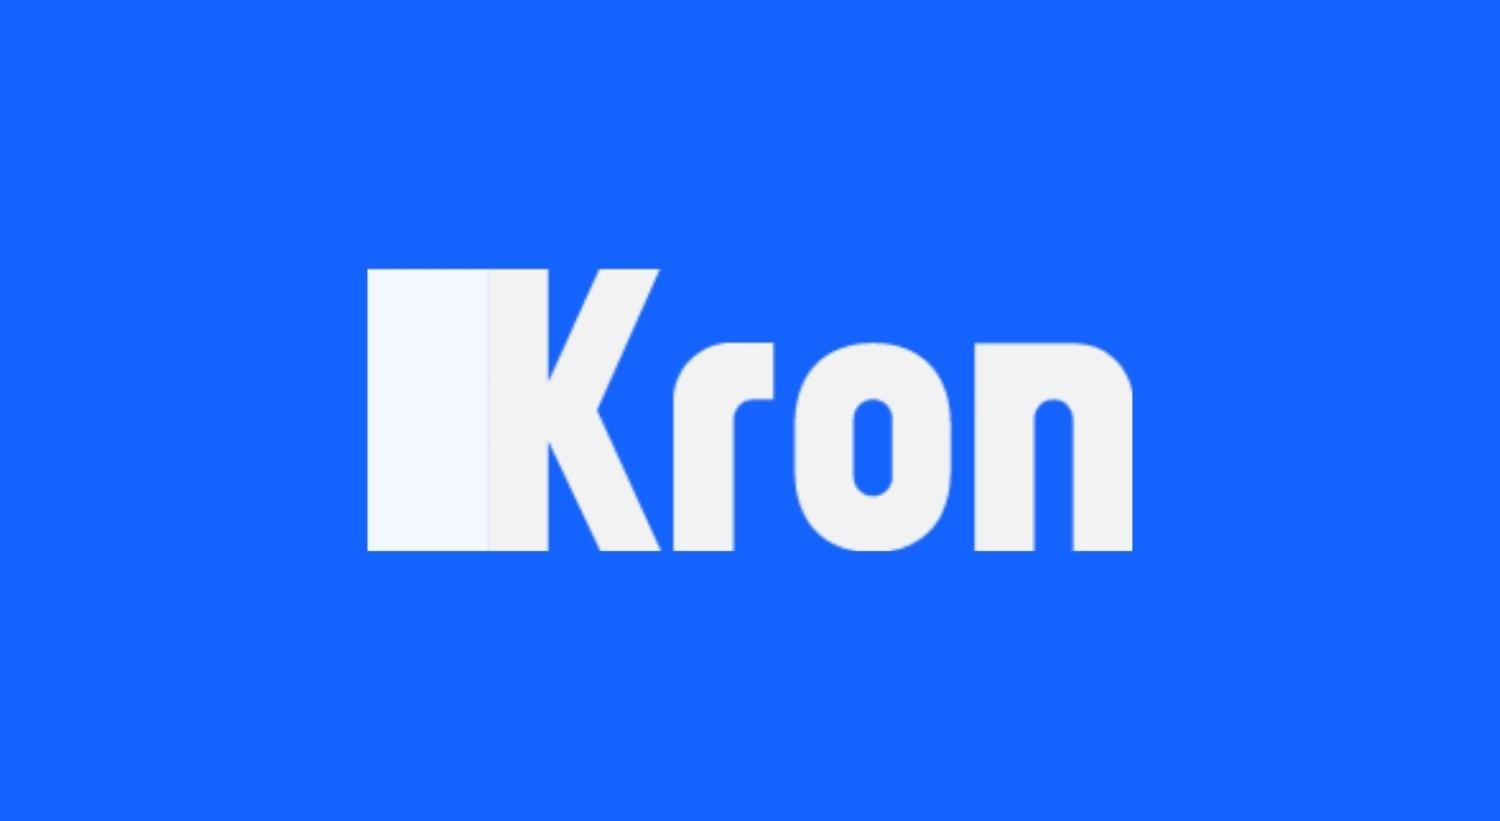 Kron - Single Connect